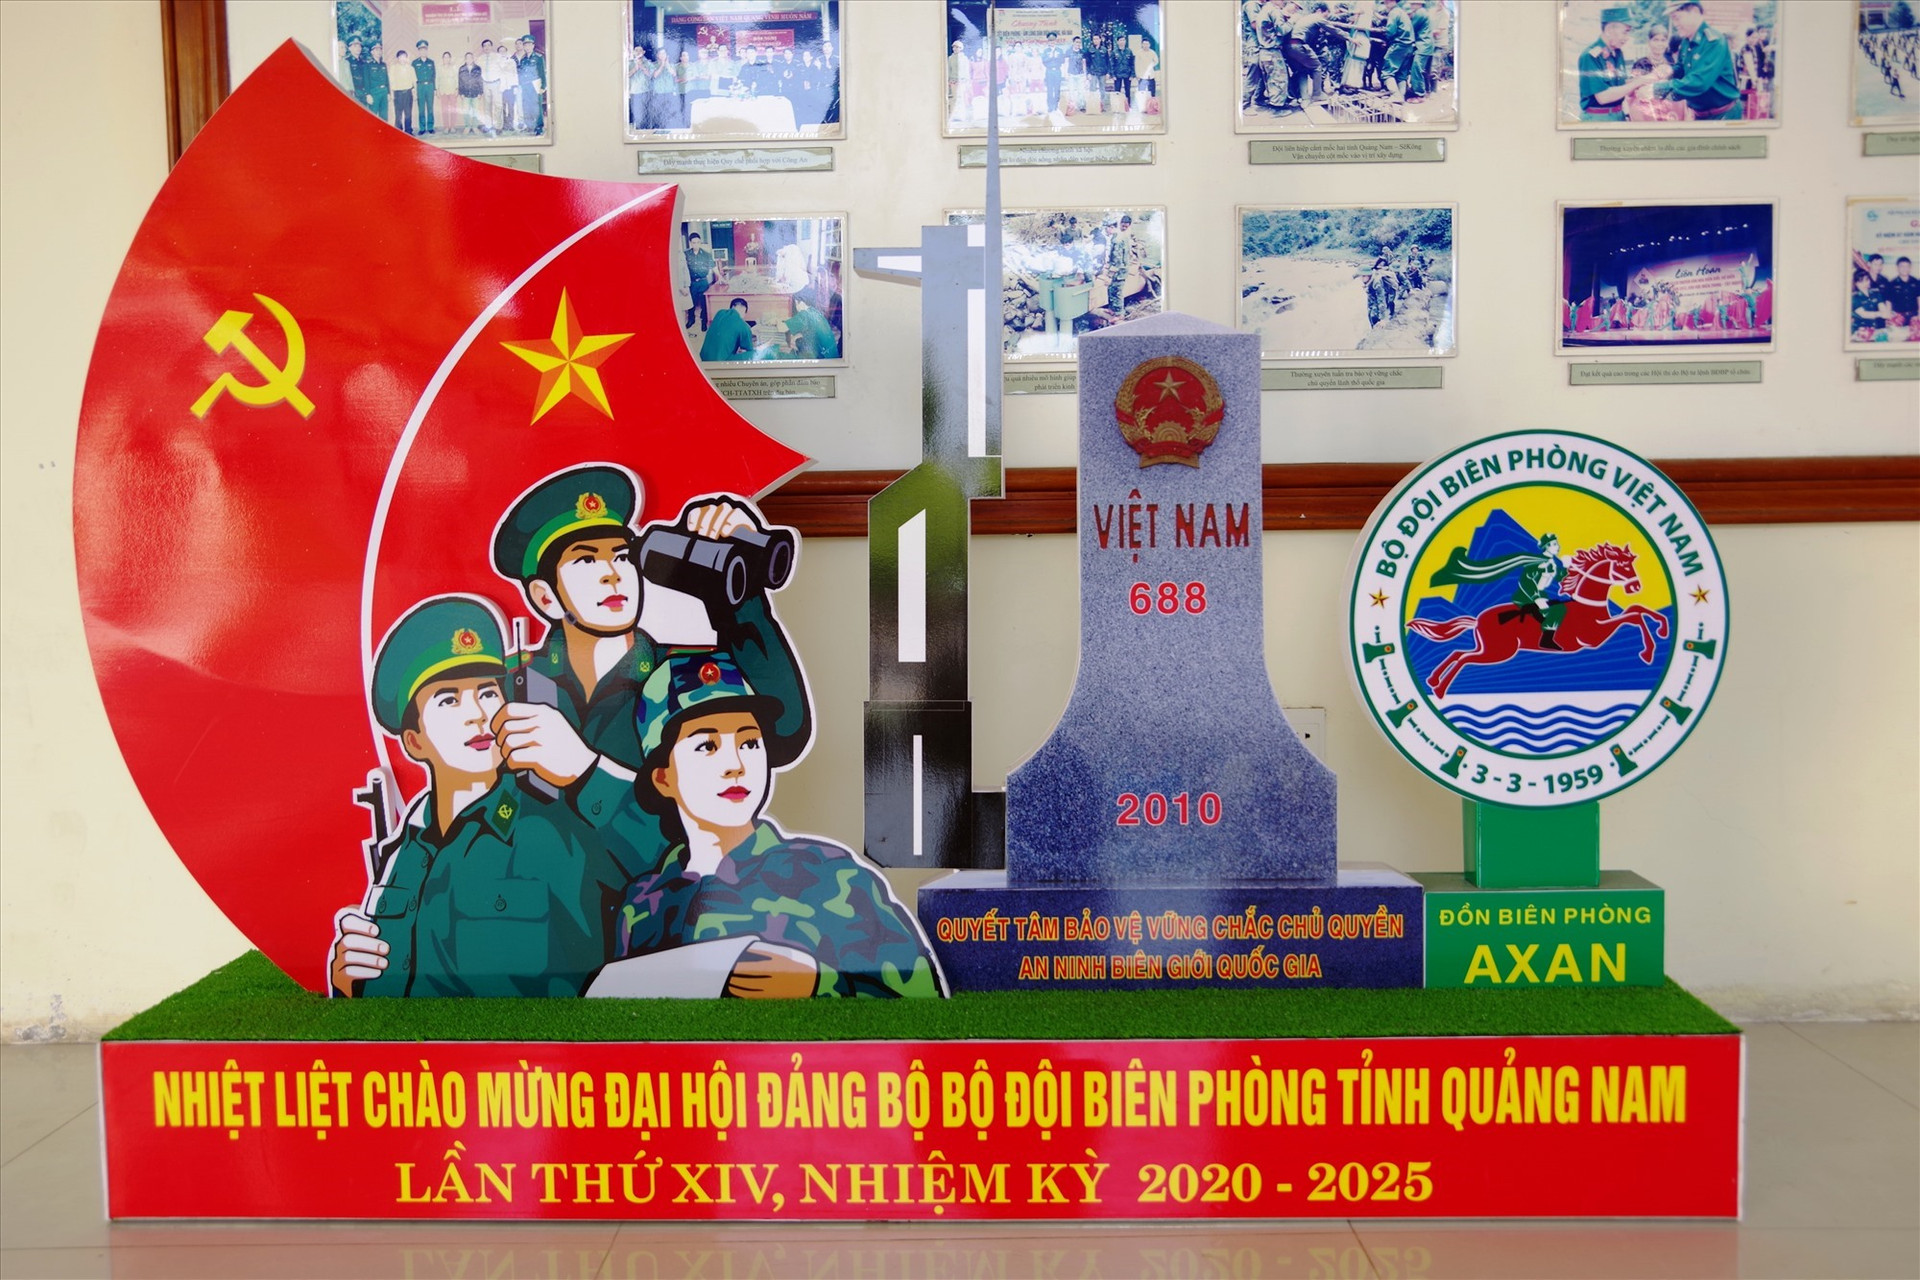 Mô hình chào mừng Đại hội Đảng bộ Bộ đội Biên phòng tỉnh Quảng Nam lần thứ XIV của Đồn Biên phòng A Xan. Ảnh: VĂN VINH